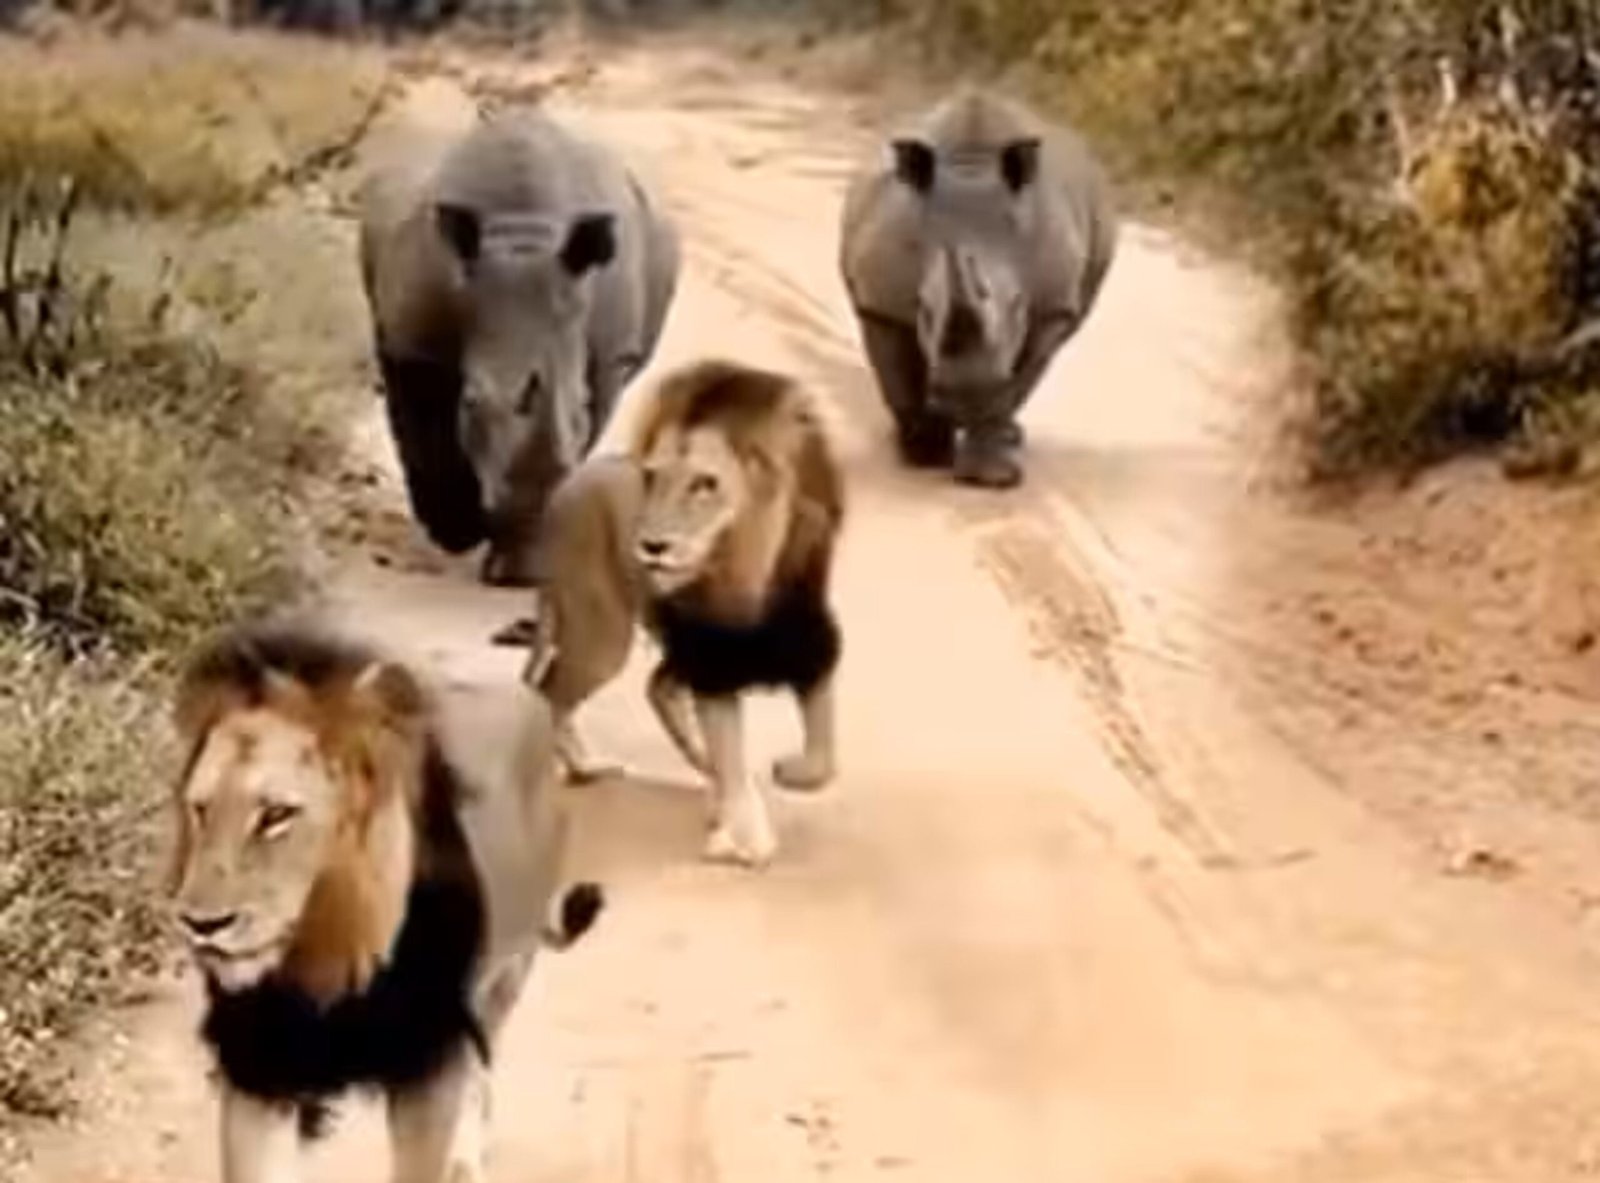 Sher or Shand ka Video - जंगल का राजा गैंडों को देख दुम दबाकर भागते आये नज़र | देखे वीडियो